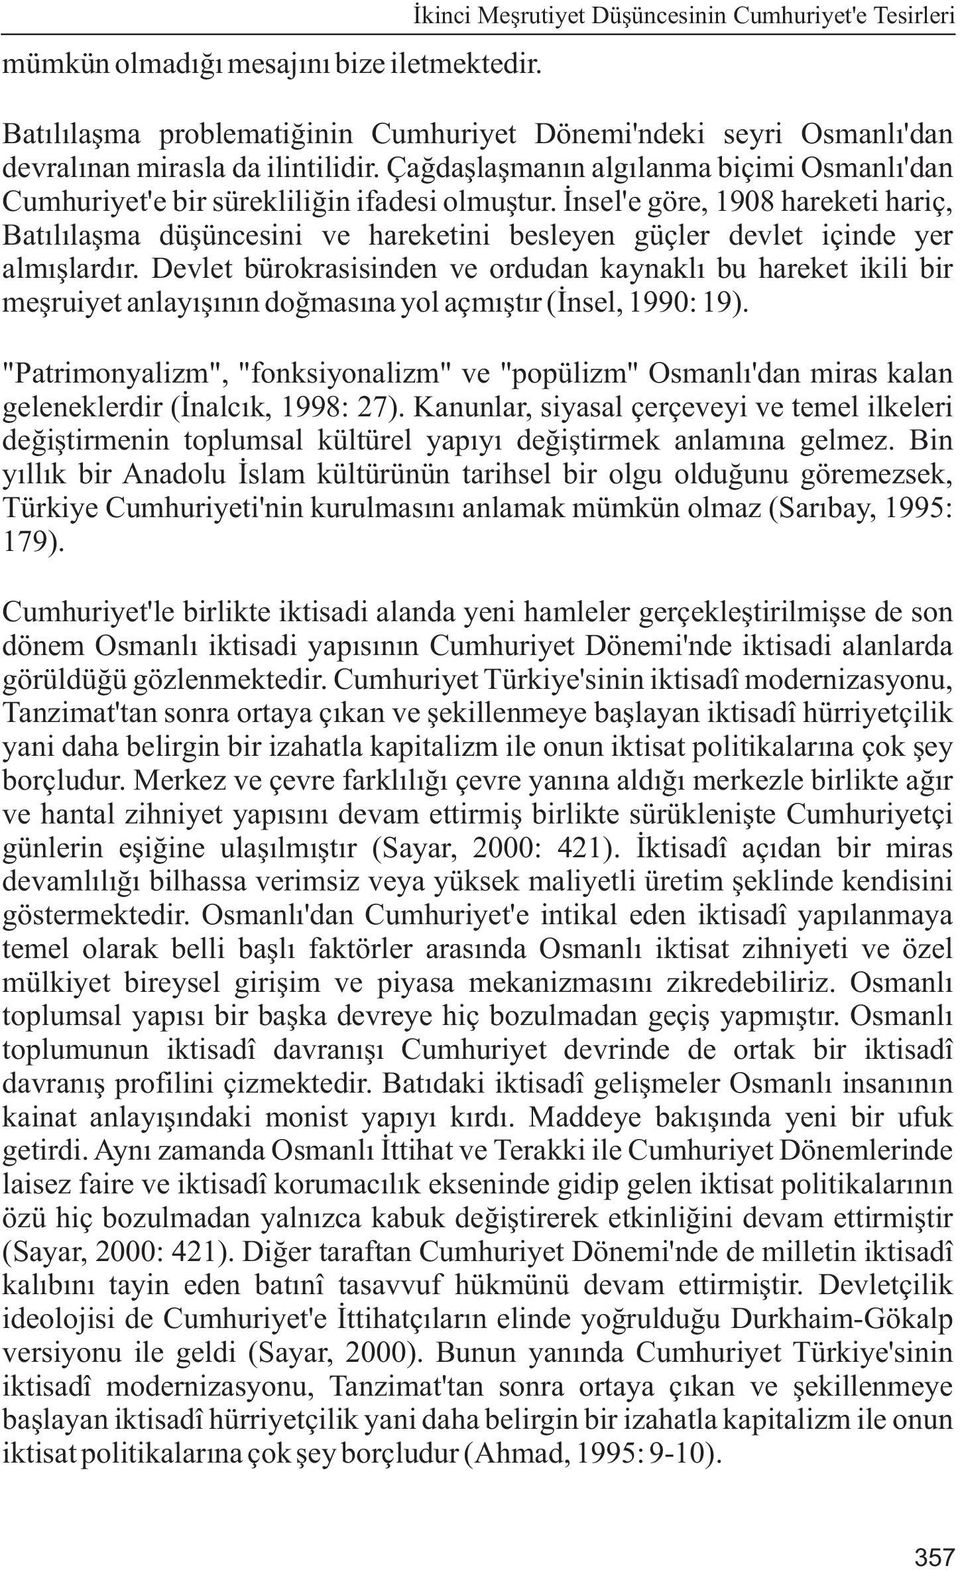 Çaðdaþlaþmanýn algýlanma biçimi Osmanlý'dan Cumhuriyet'e bir sürekliliðin ifadesi olmuþtur.